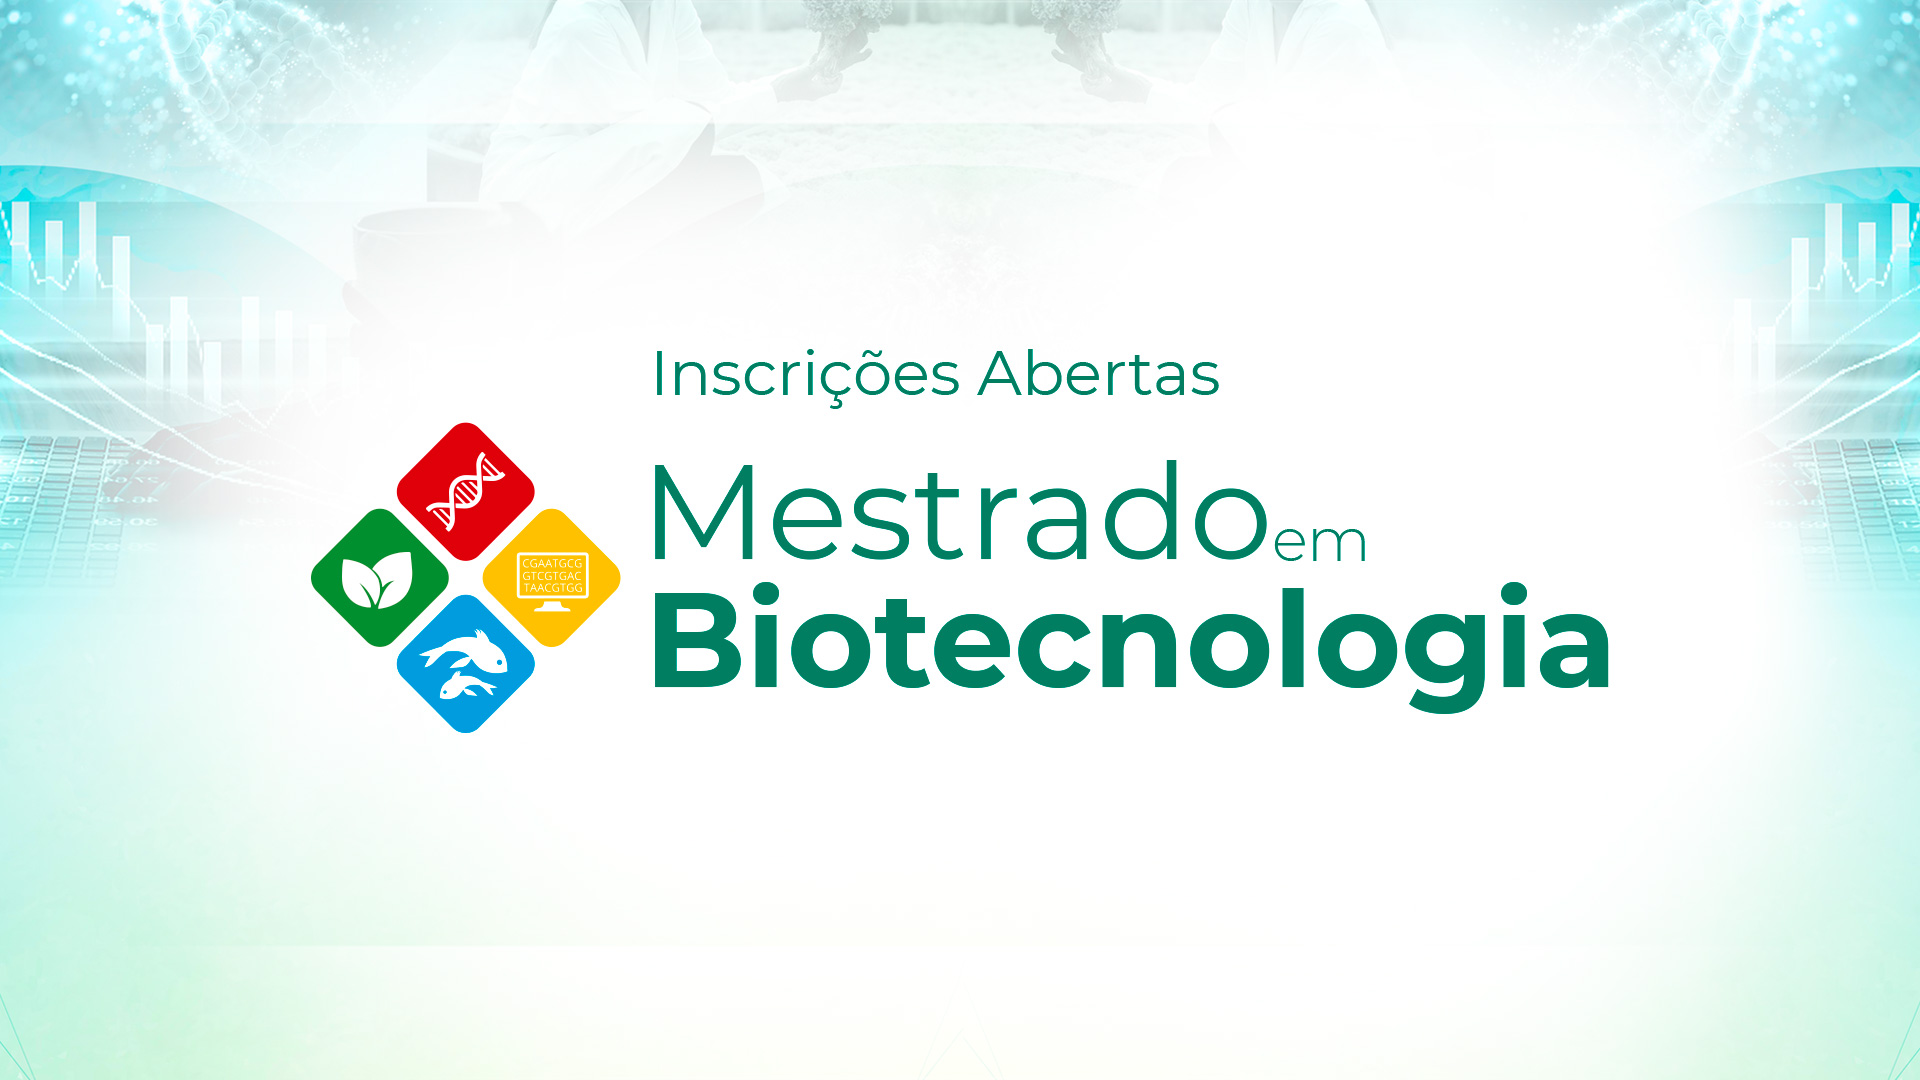 Mestrado em Biotecnologia: inscrições estão abertas para a turma de 2021.1